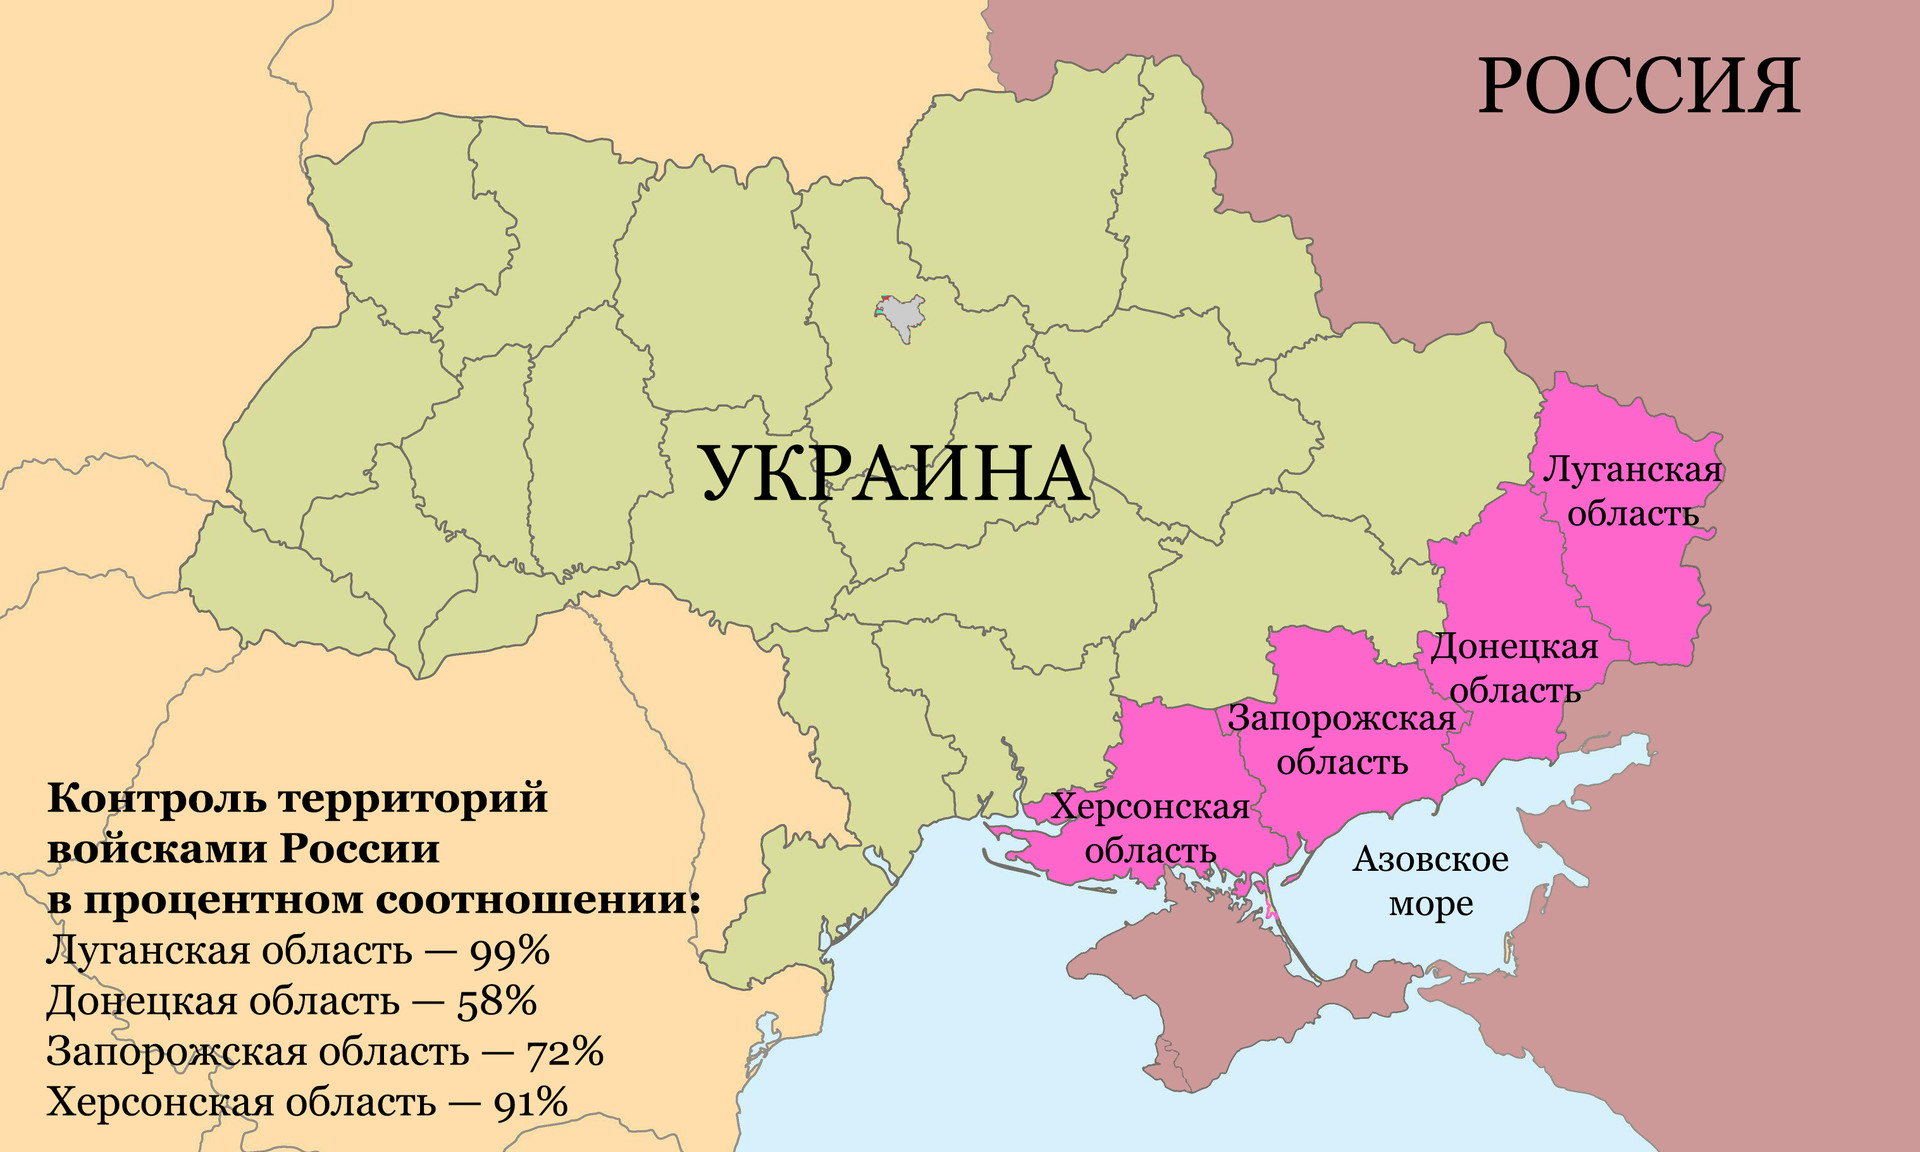 Новая география: как теперь будет выглядеть карта России — показываемнаглядно